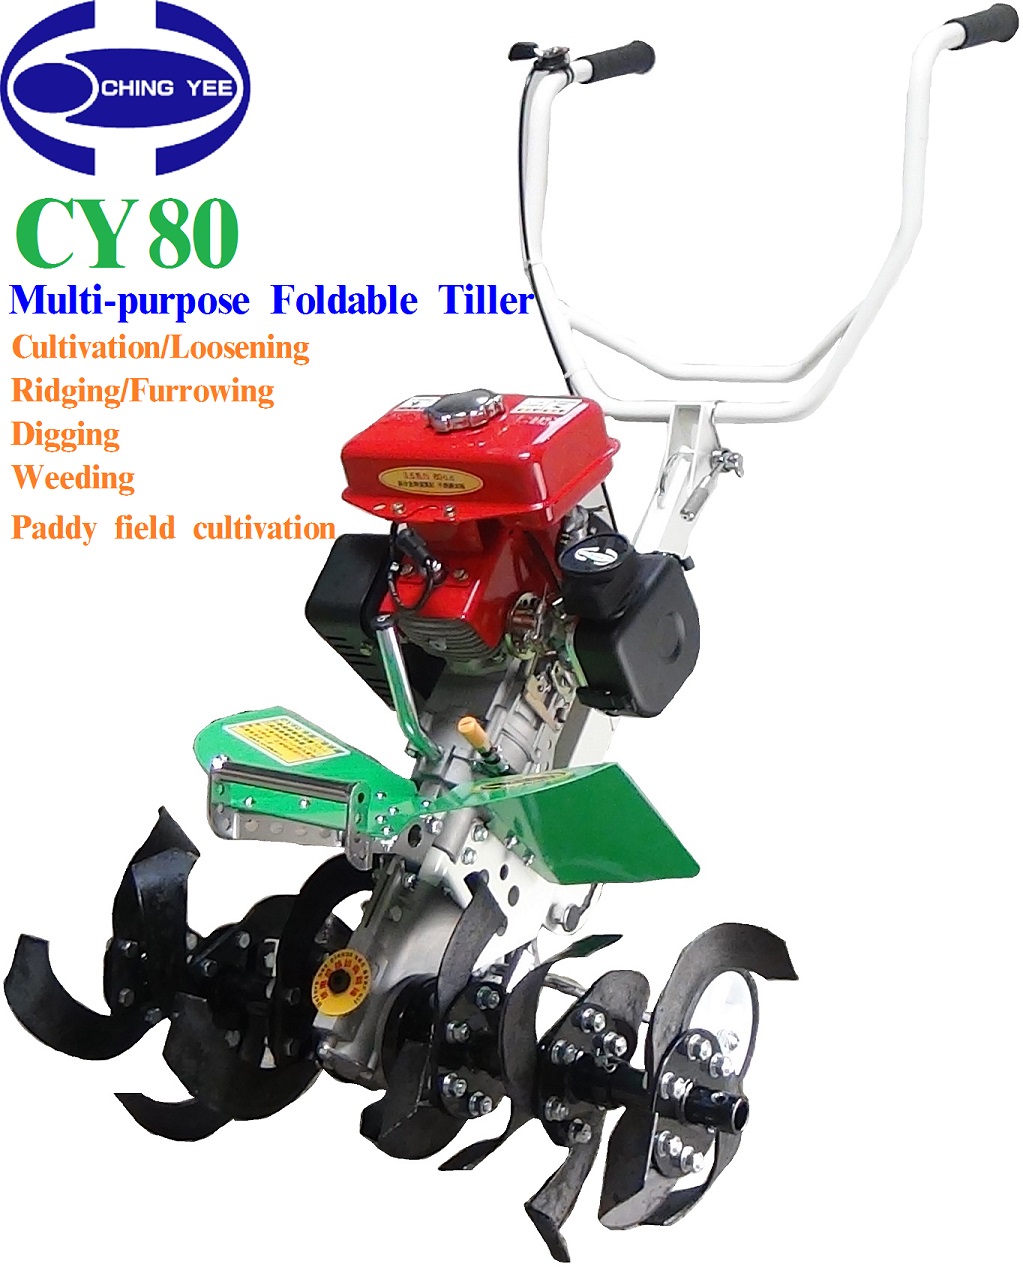 CY80 Multi-purpose Power tiller/Cultivator